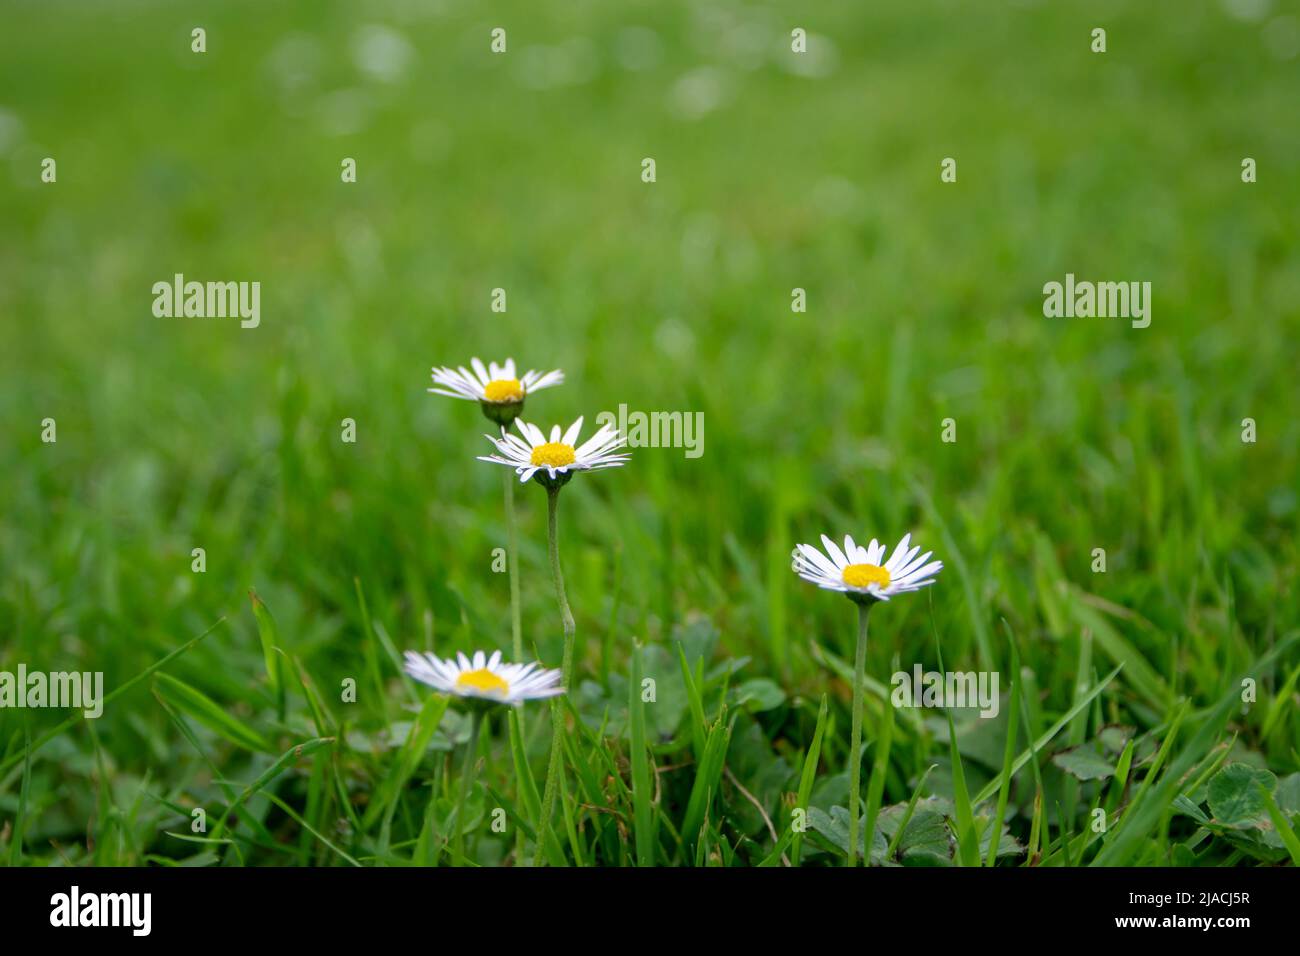 Daisy o bellis perennis flores blancas con el centro amarillo en el prado verde en la primavera Foto de stock